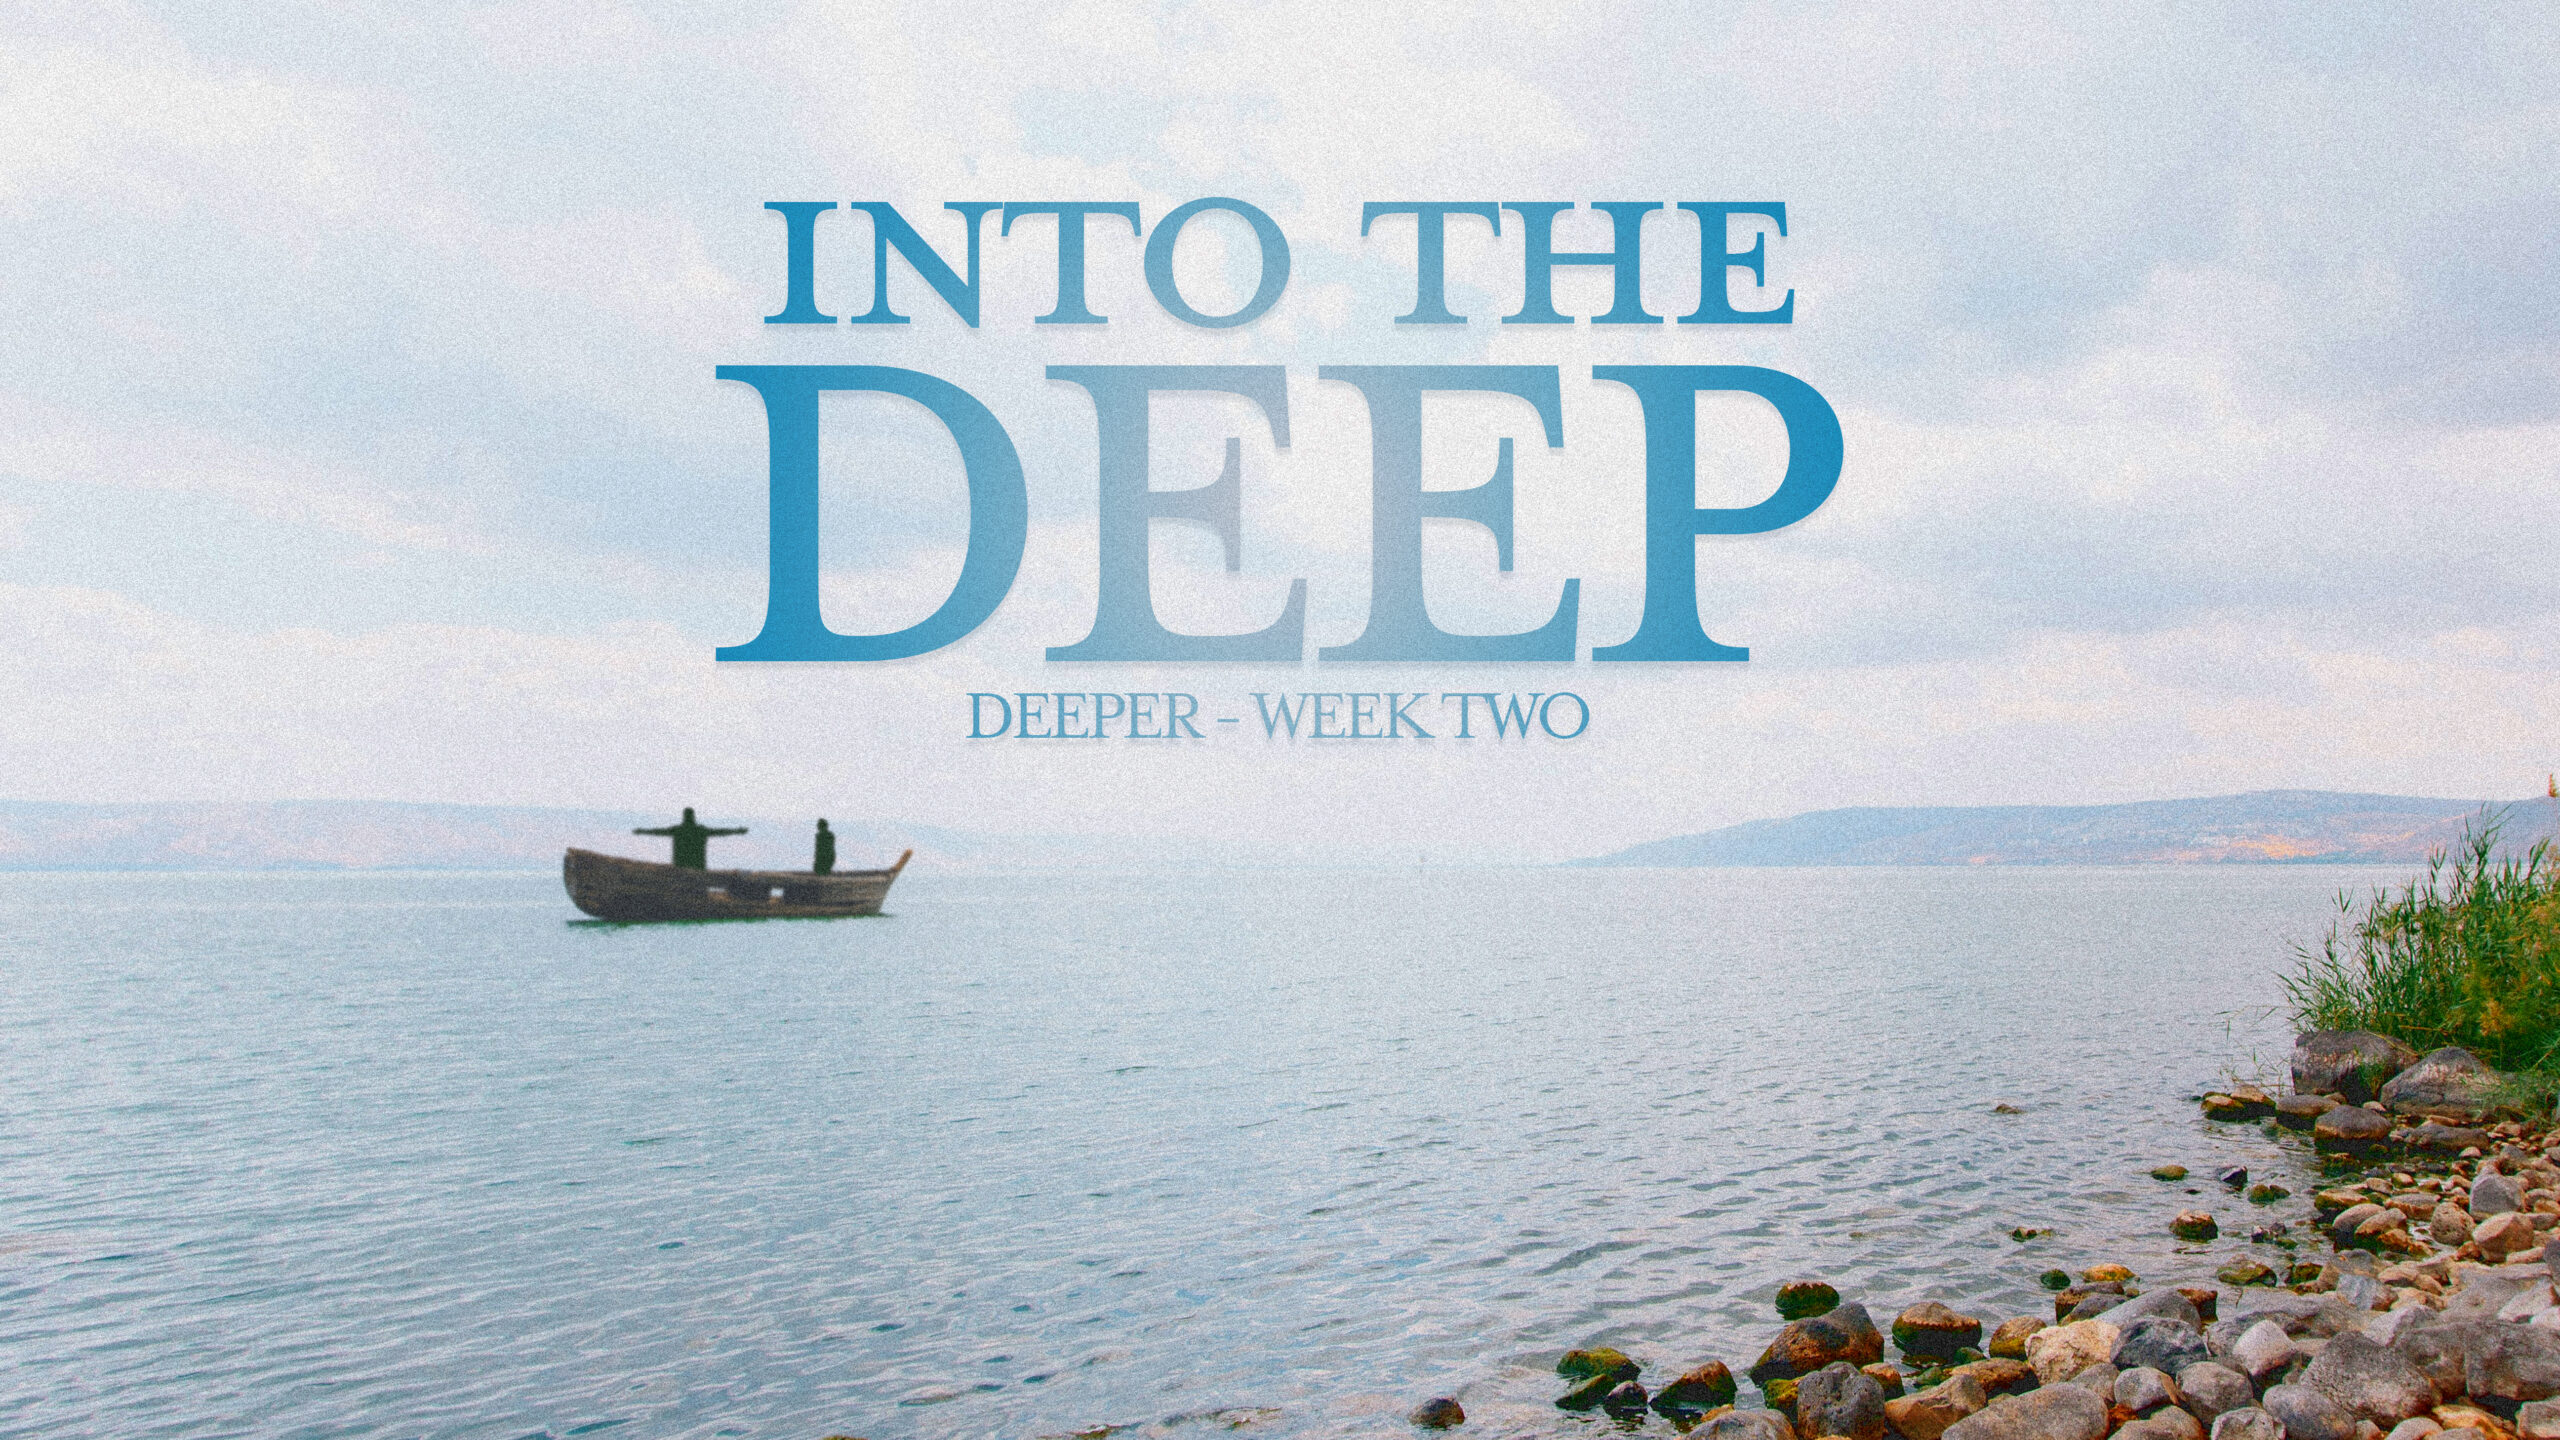 Deeper - Week Two